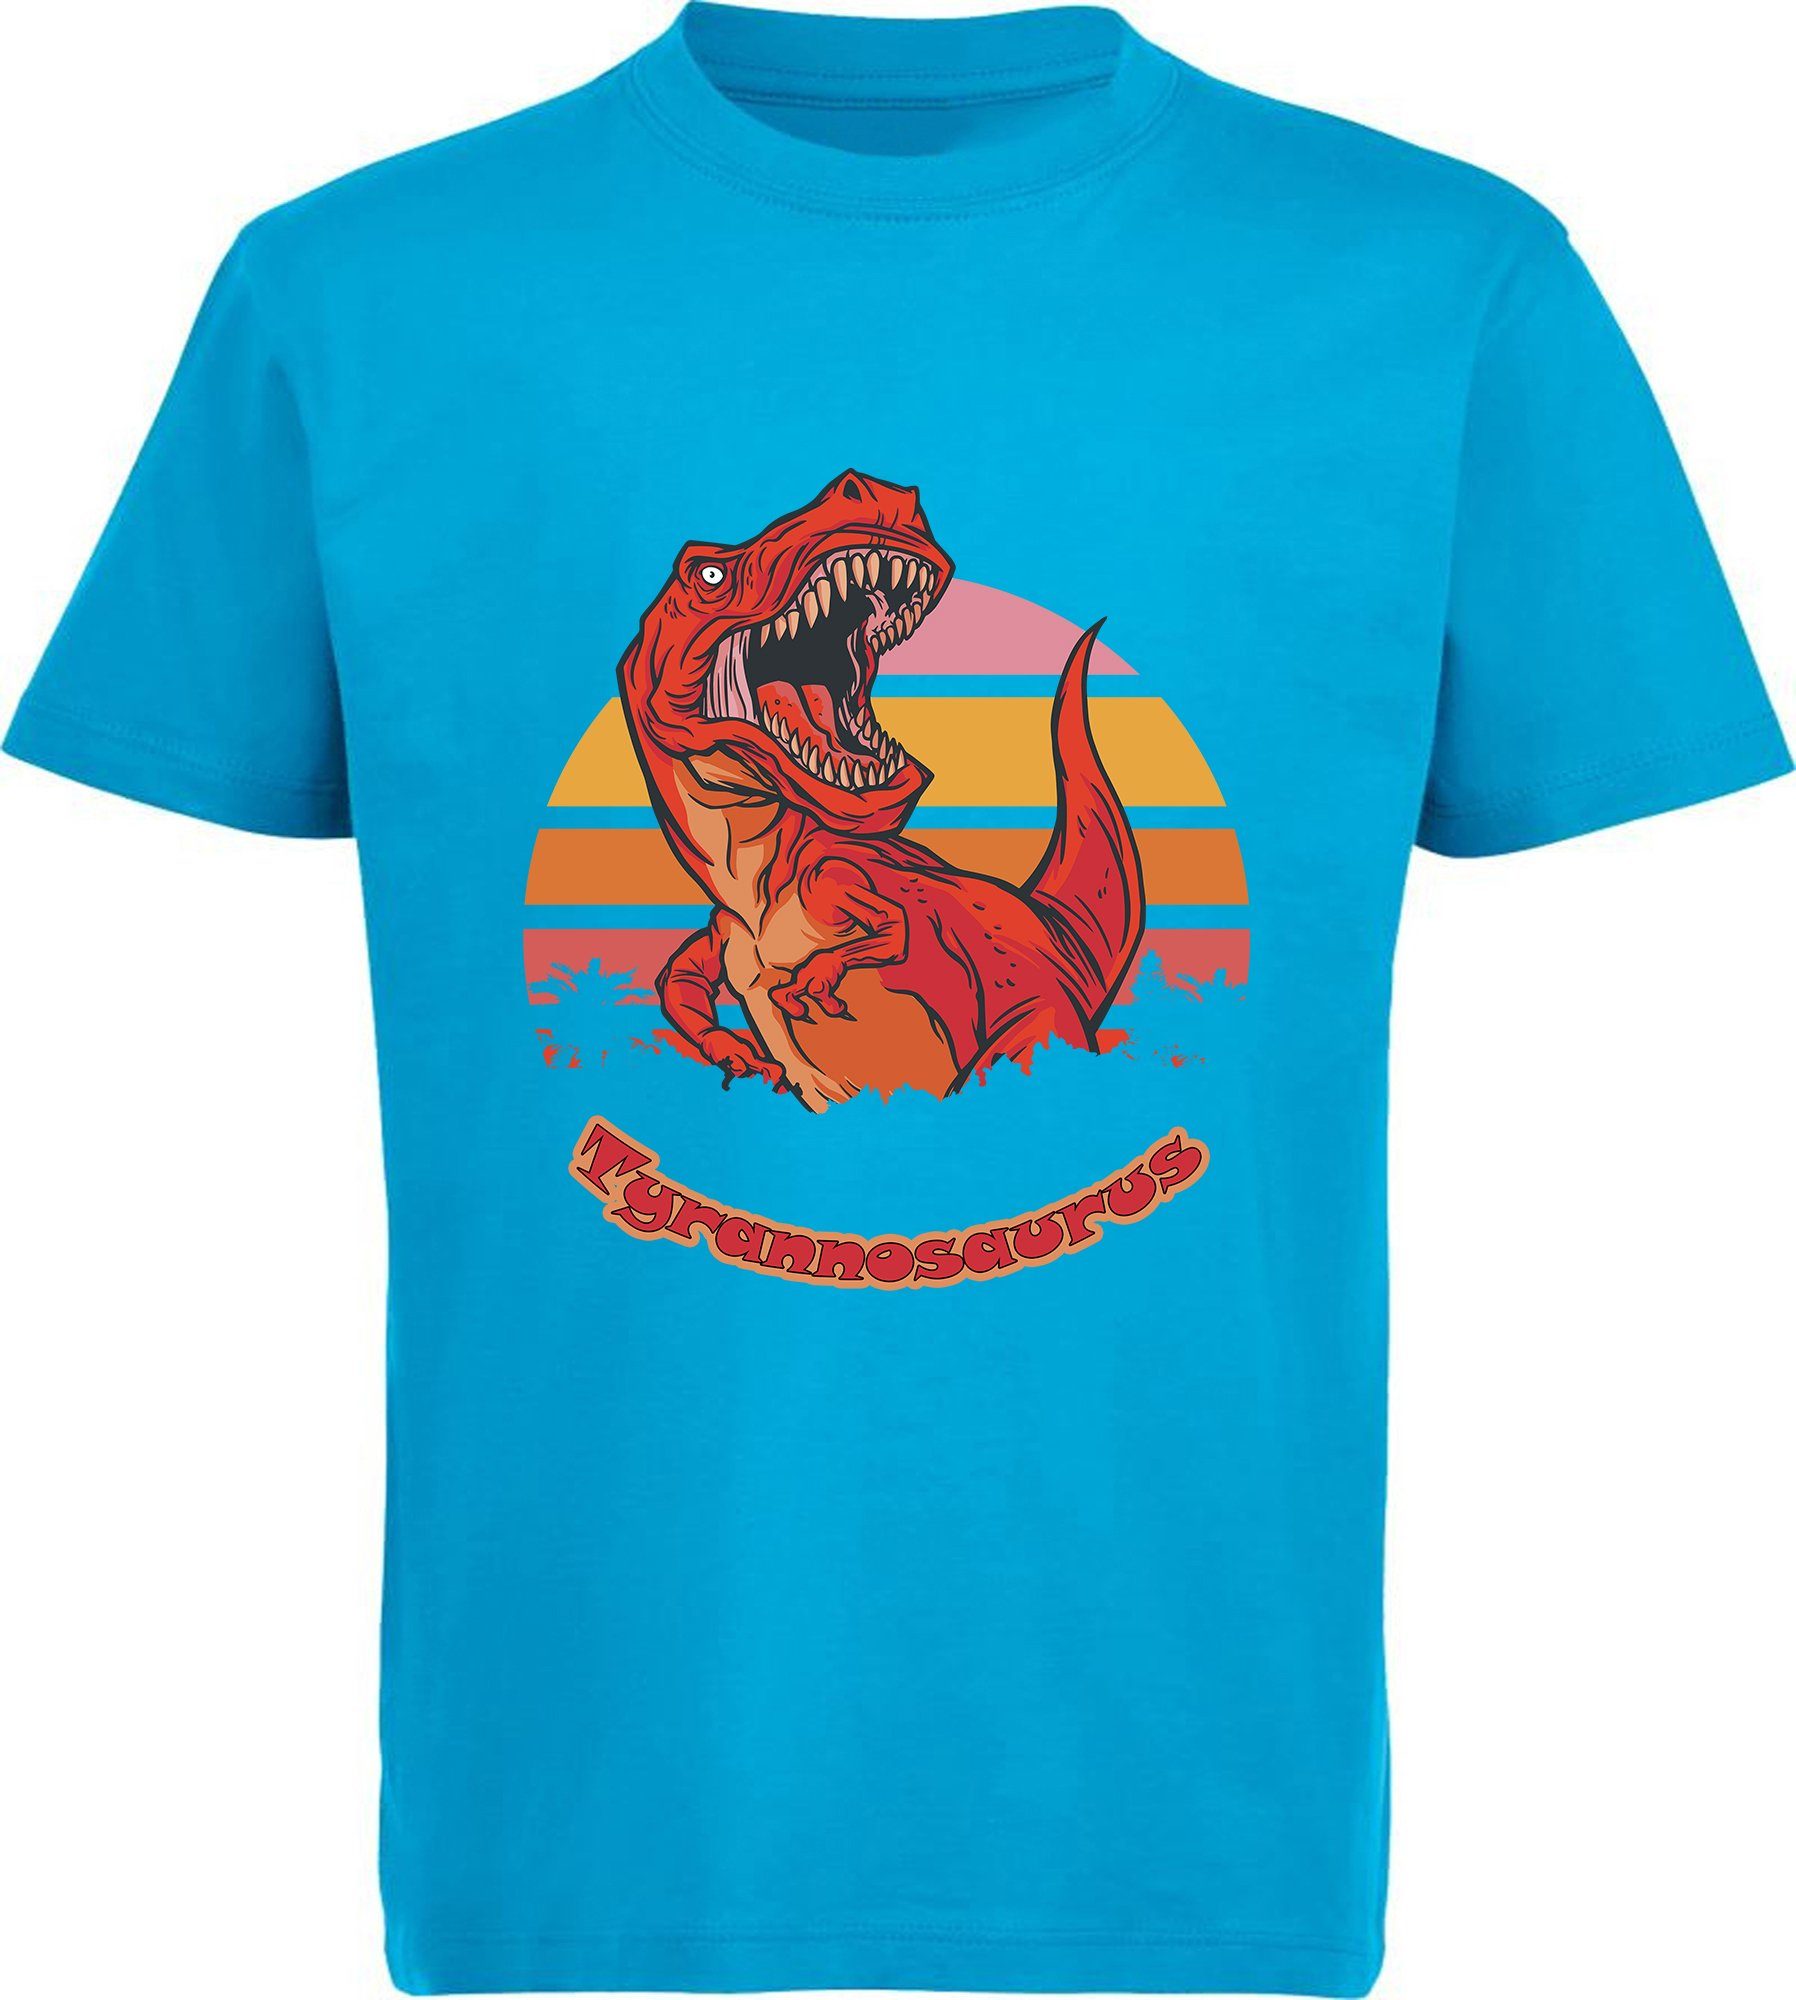 aqua Kinder schwarz, T-Rex MyDesign24 mit Print-Shirt brüllendem rot, blau T-Shirt i100 Baumwollshirt roten Dino, mit weiß, bedrucktes blau,